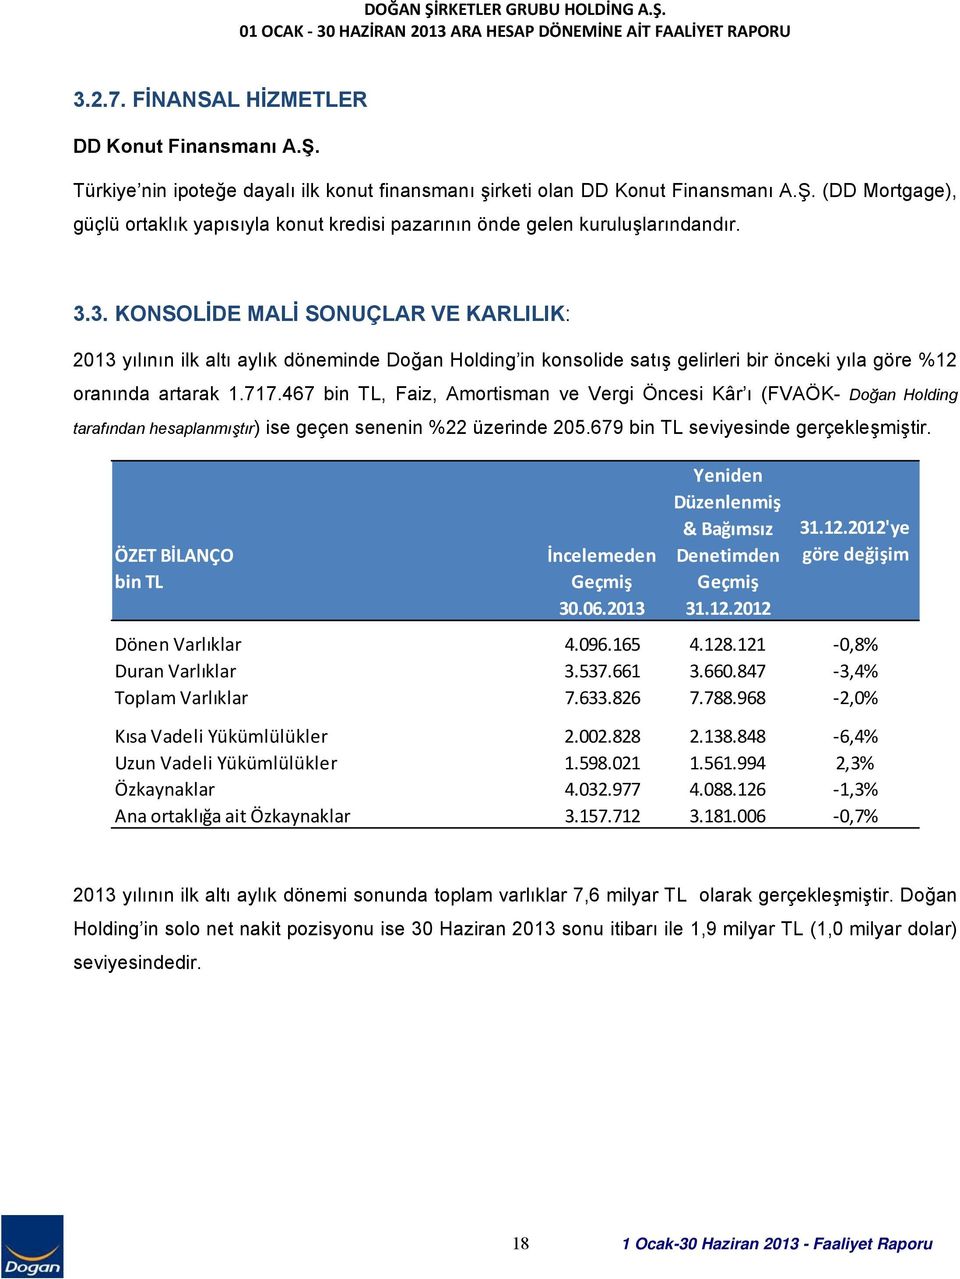 3. KONSOLİDE MALİ SONUÇLAR VE KARLILIK: 2013 yılının ilk altı aylık döneminde Doğan Holding in konsolide satış gelirleri bir önceki yıla göre %12 oranında artarak 1.717.